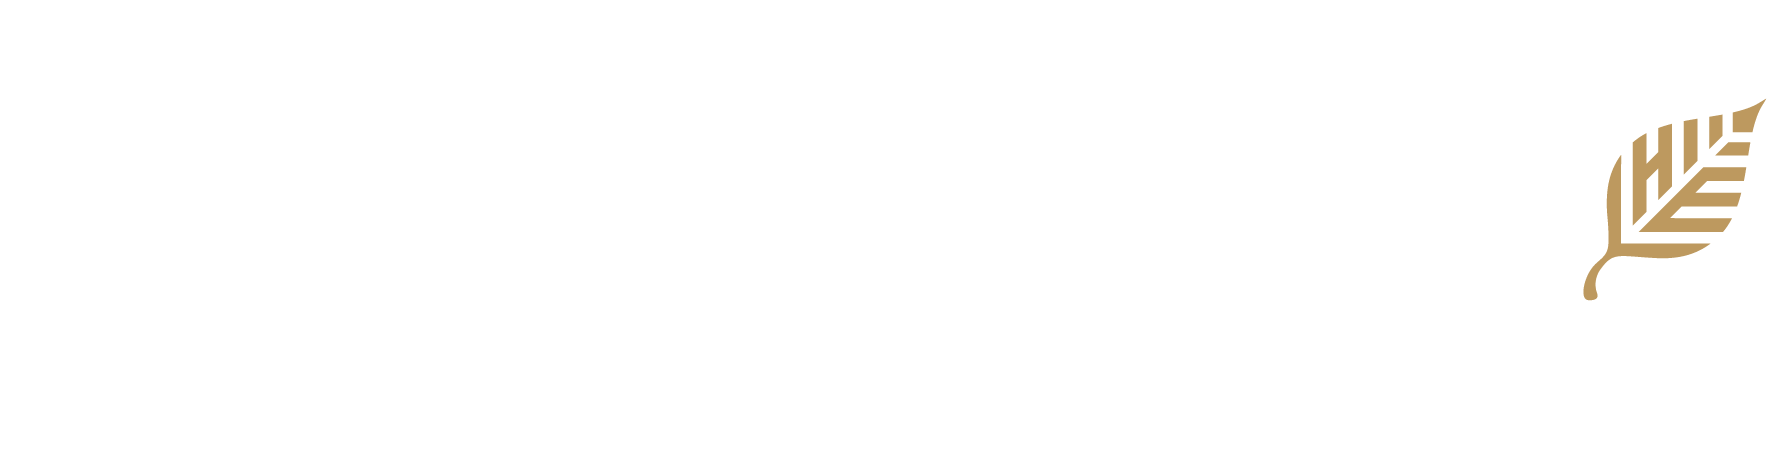 Halbrooke & Elm logo